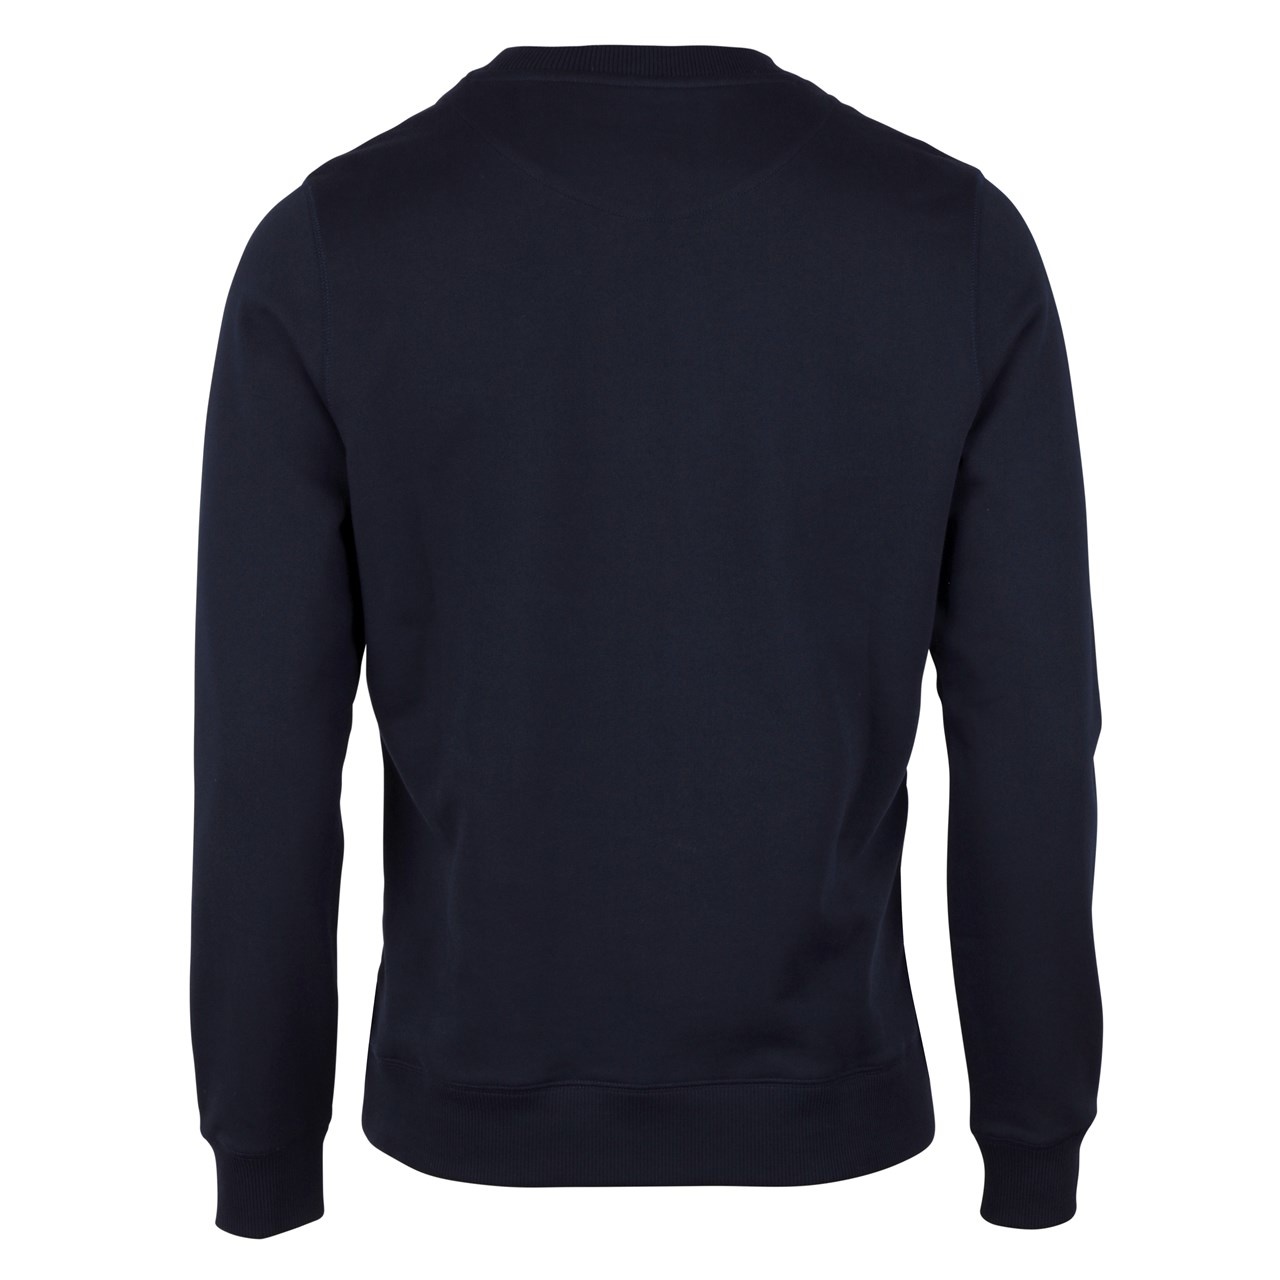 Stenstroms Cotton navy sweatshirt